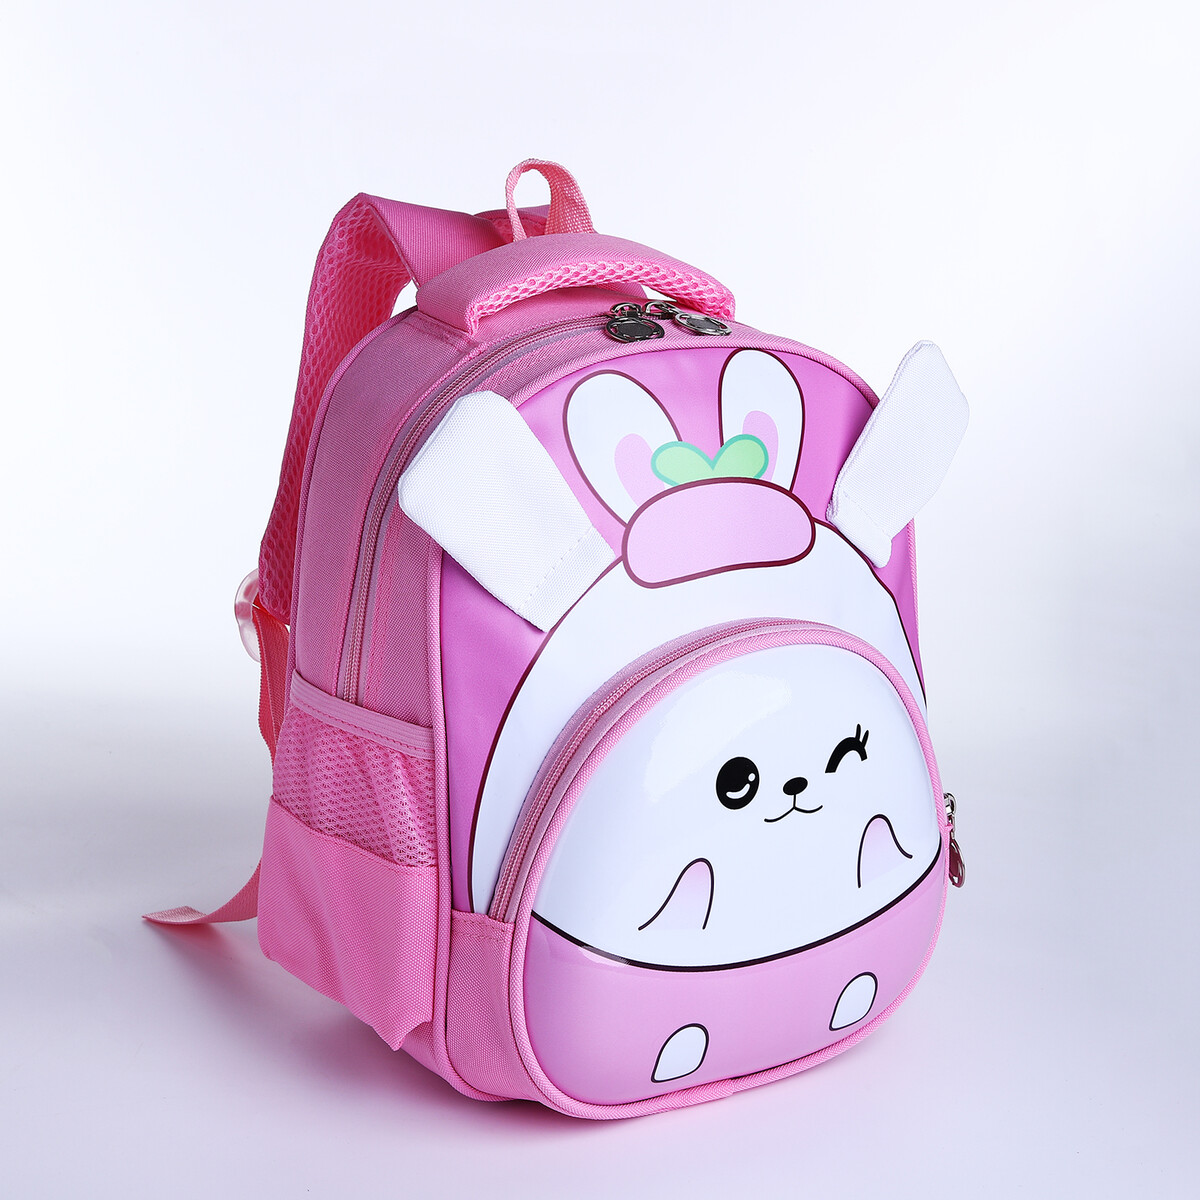 Рюкзак детский на молнии, 3 наружных кармана, цвет розовый рюкзак сумка на молнии 4 наружных кармана отделение для обуви розовый